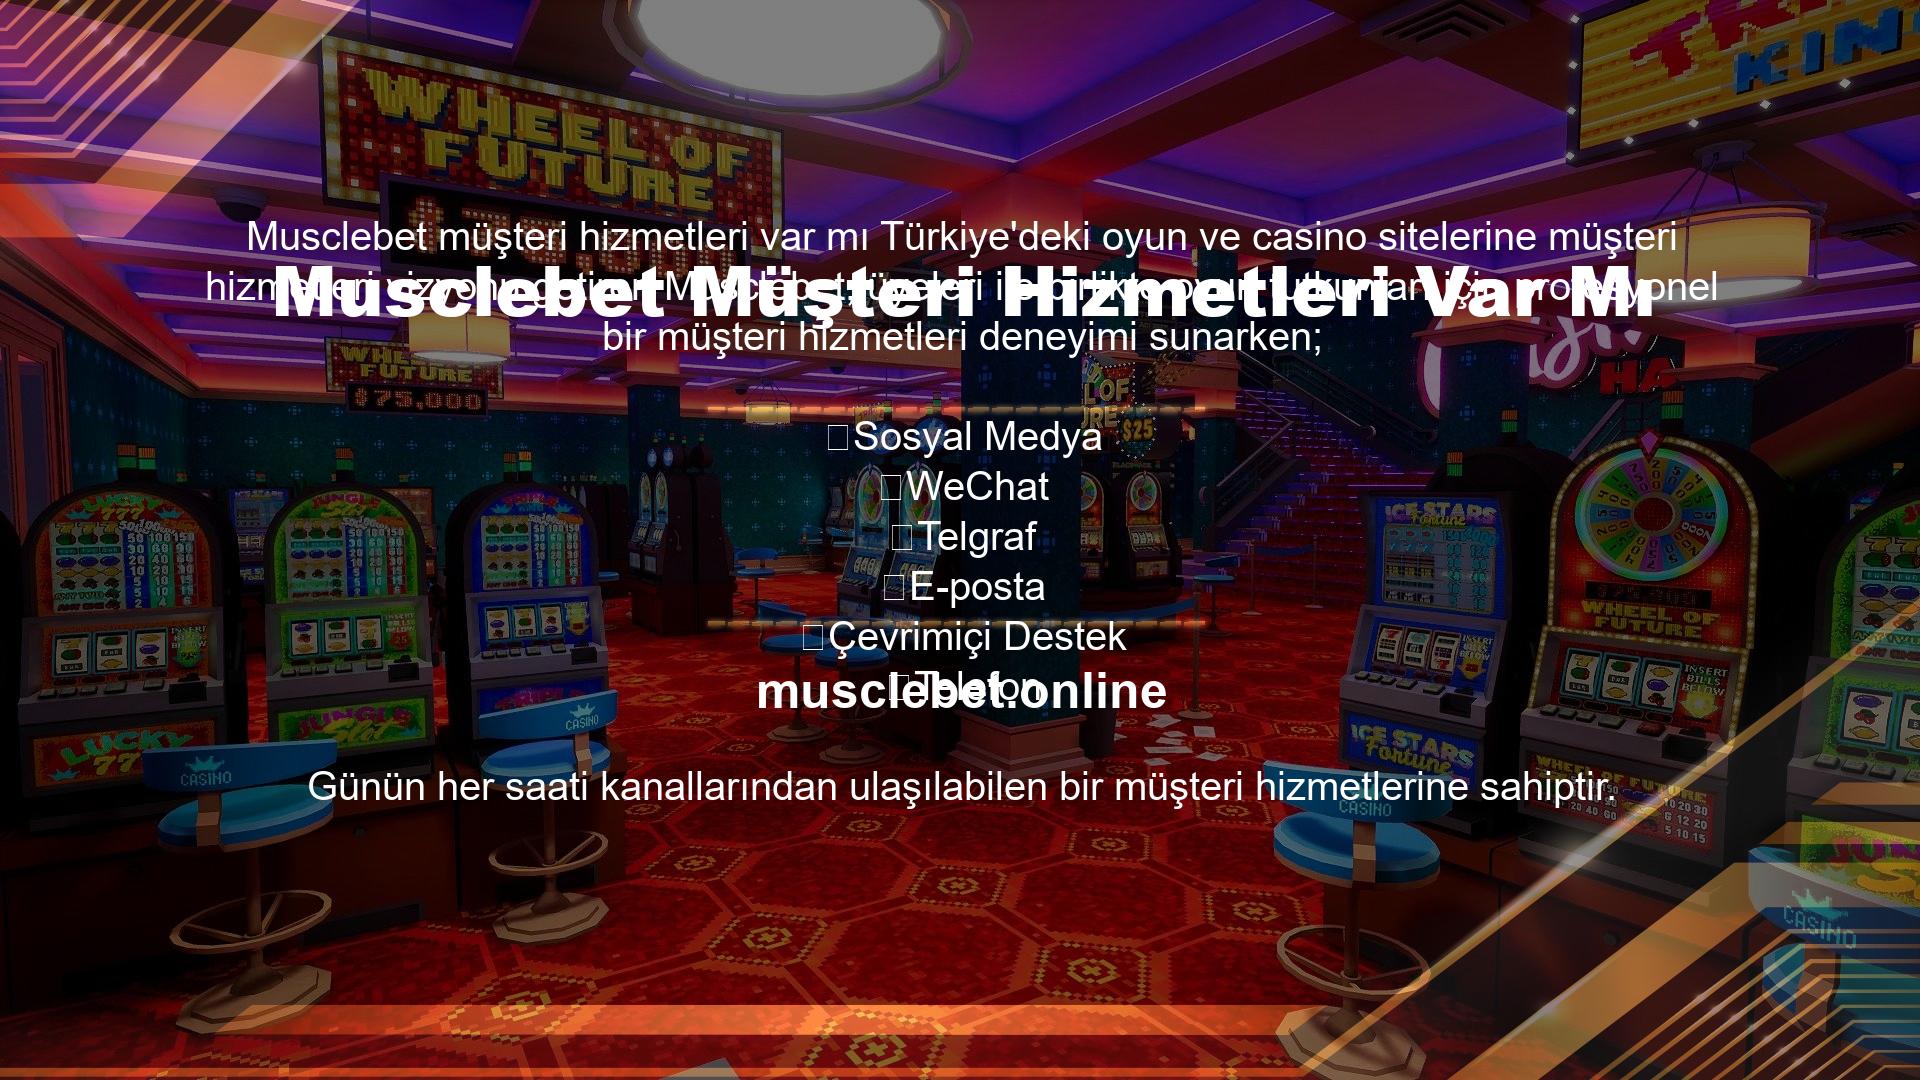 Musclebet Casinolar Lisansı Var MıMusclebet, uluslararası geçerliliğe sahip bir casinolar lisansına sahiptir ve güvenilir bir casinolar sistemini bu lisansın tüm yönlerine tamamen entegre ederek olağanüstü hizmet standartlarını yükseltmeye çalışmaktadır